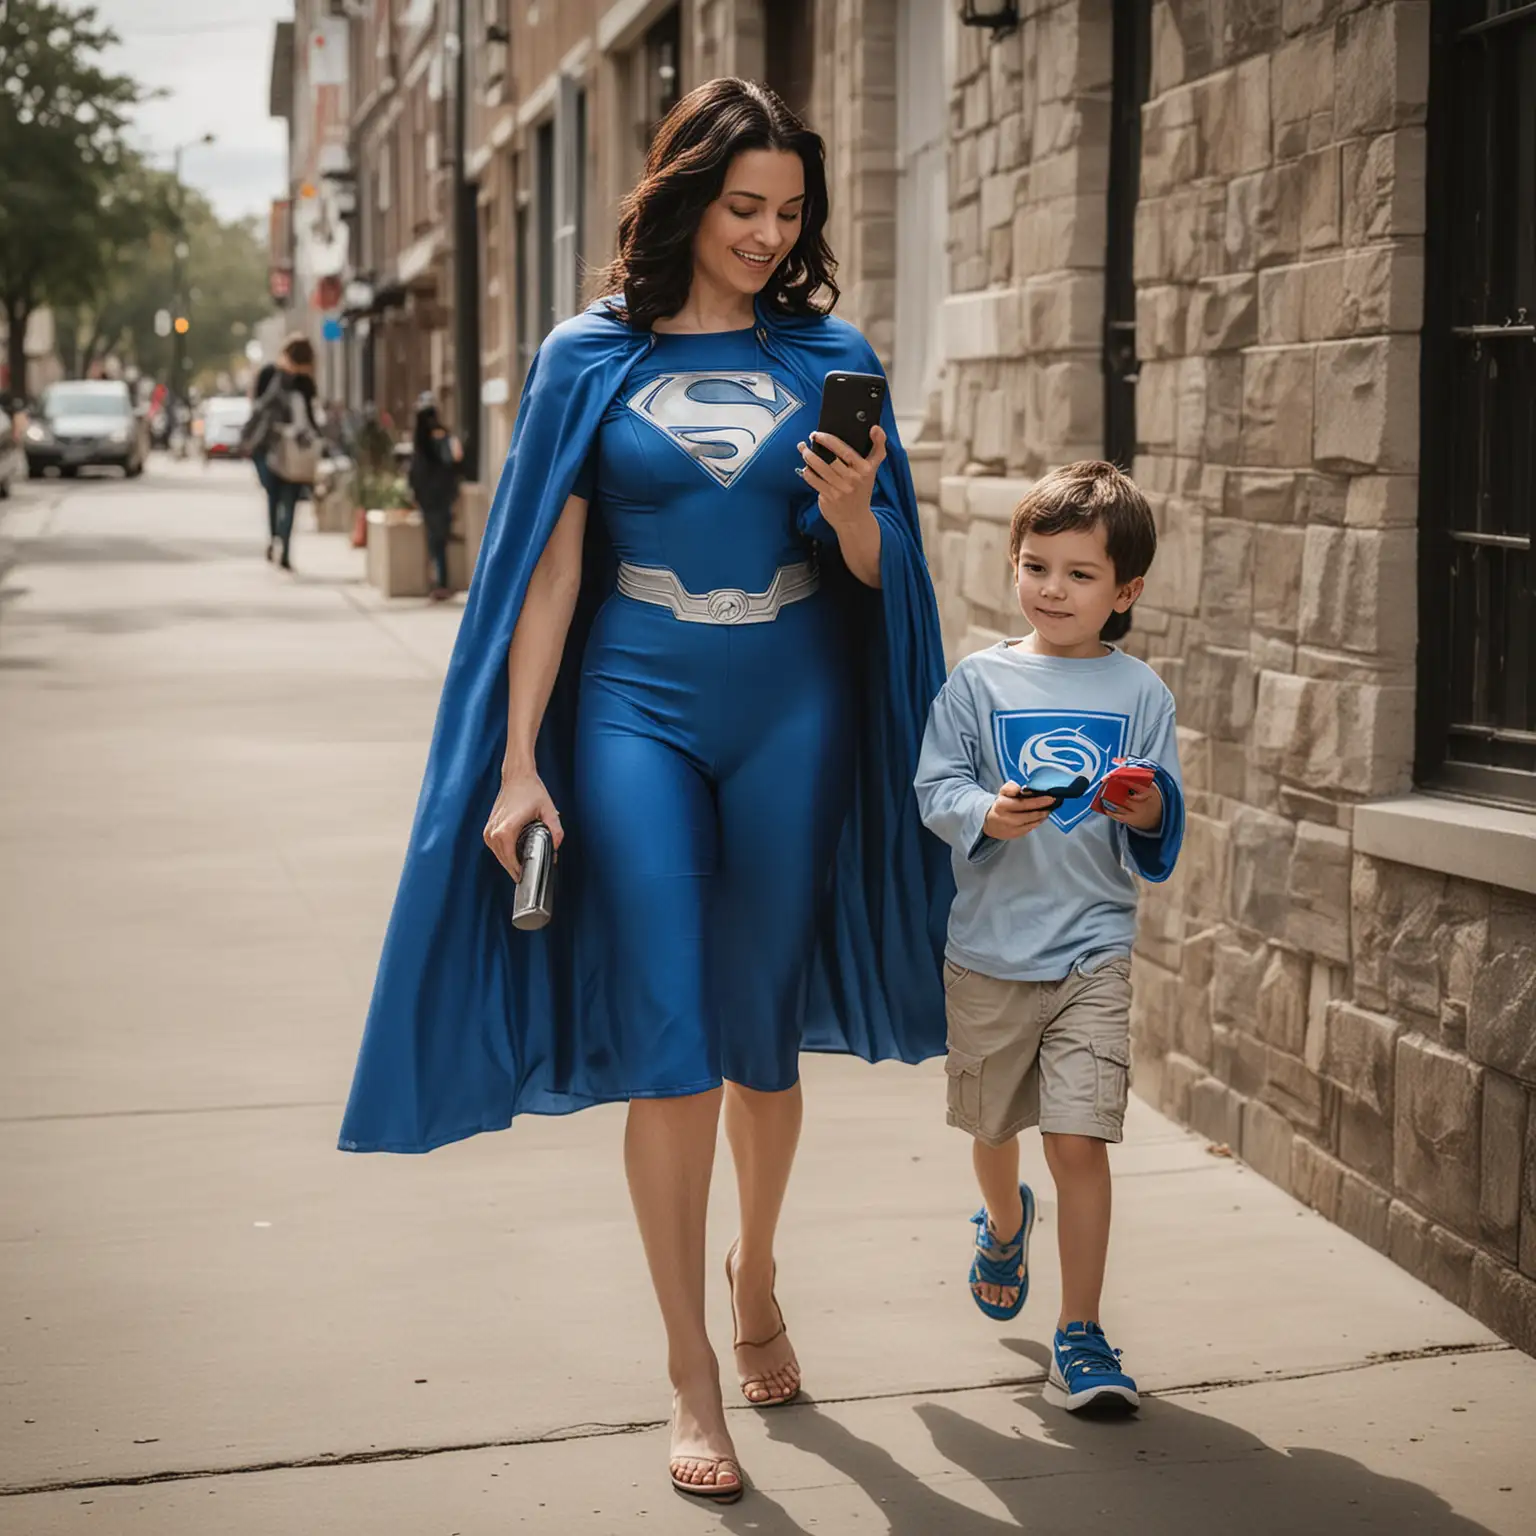 colocar una capa de super heroe azul sobre la mamá con un celular en la mano viendo el celular, mientras camina con su hijo